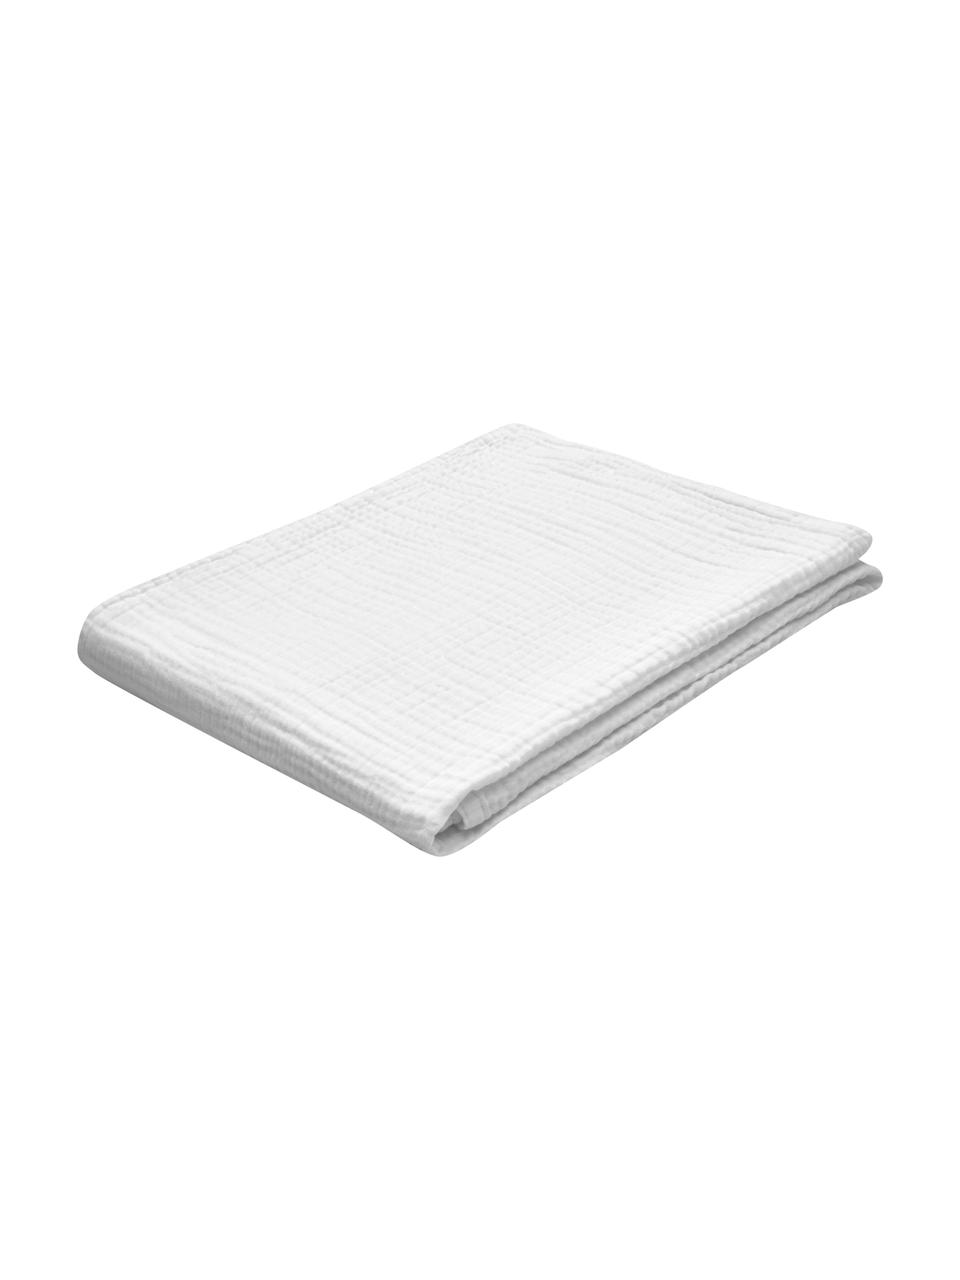 Couvre-lit mousseline de coton bio blanc Candela, Coton bio 100 %, certifié GOTS, Blanc, larg. 150 x long. 250 cm (pour lits jusqu'à 100 x 200 cm)